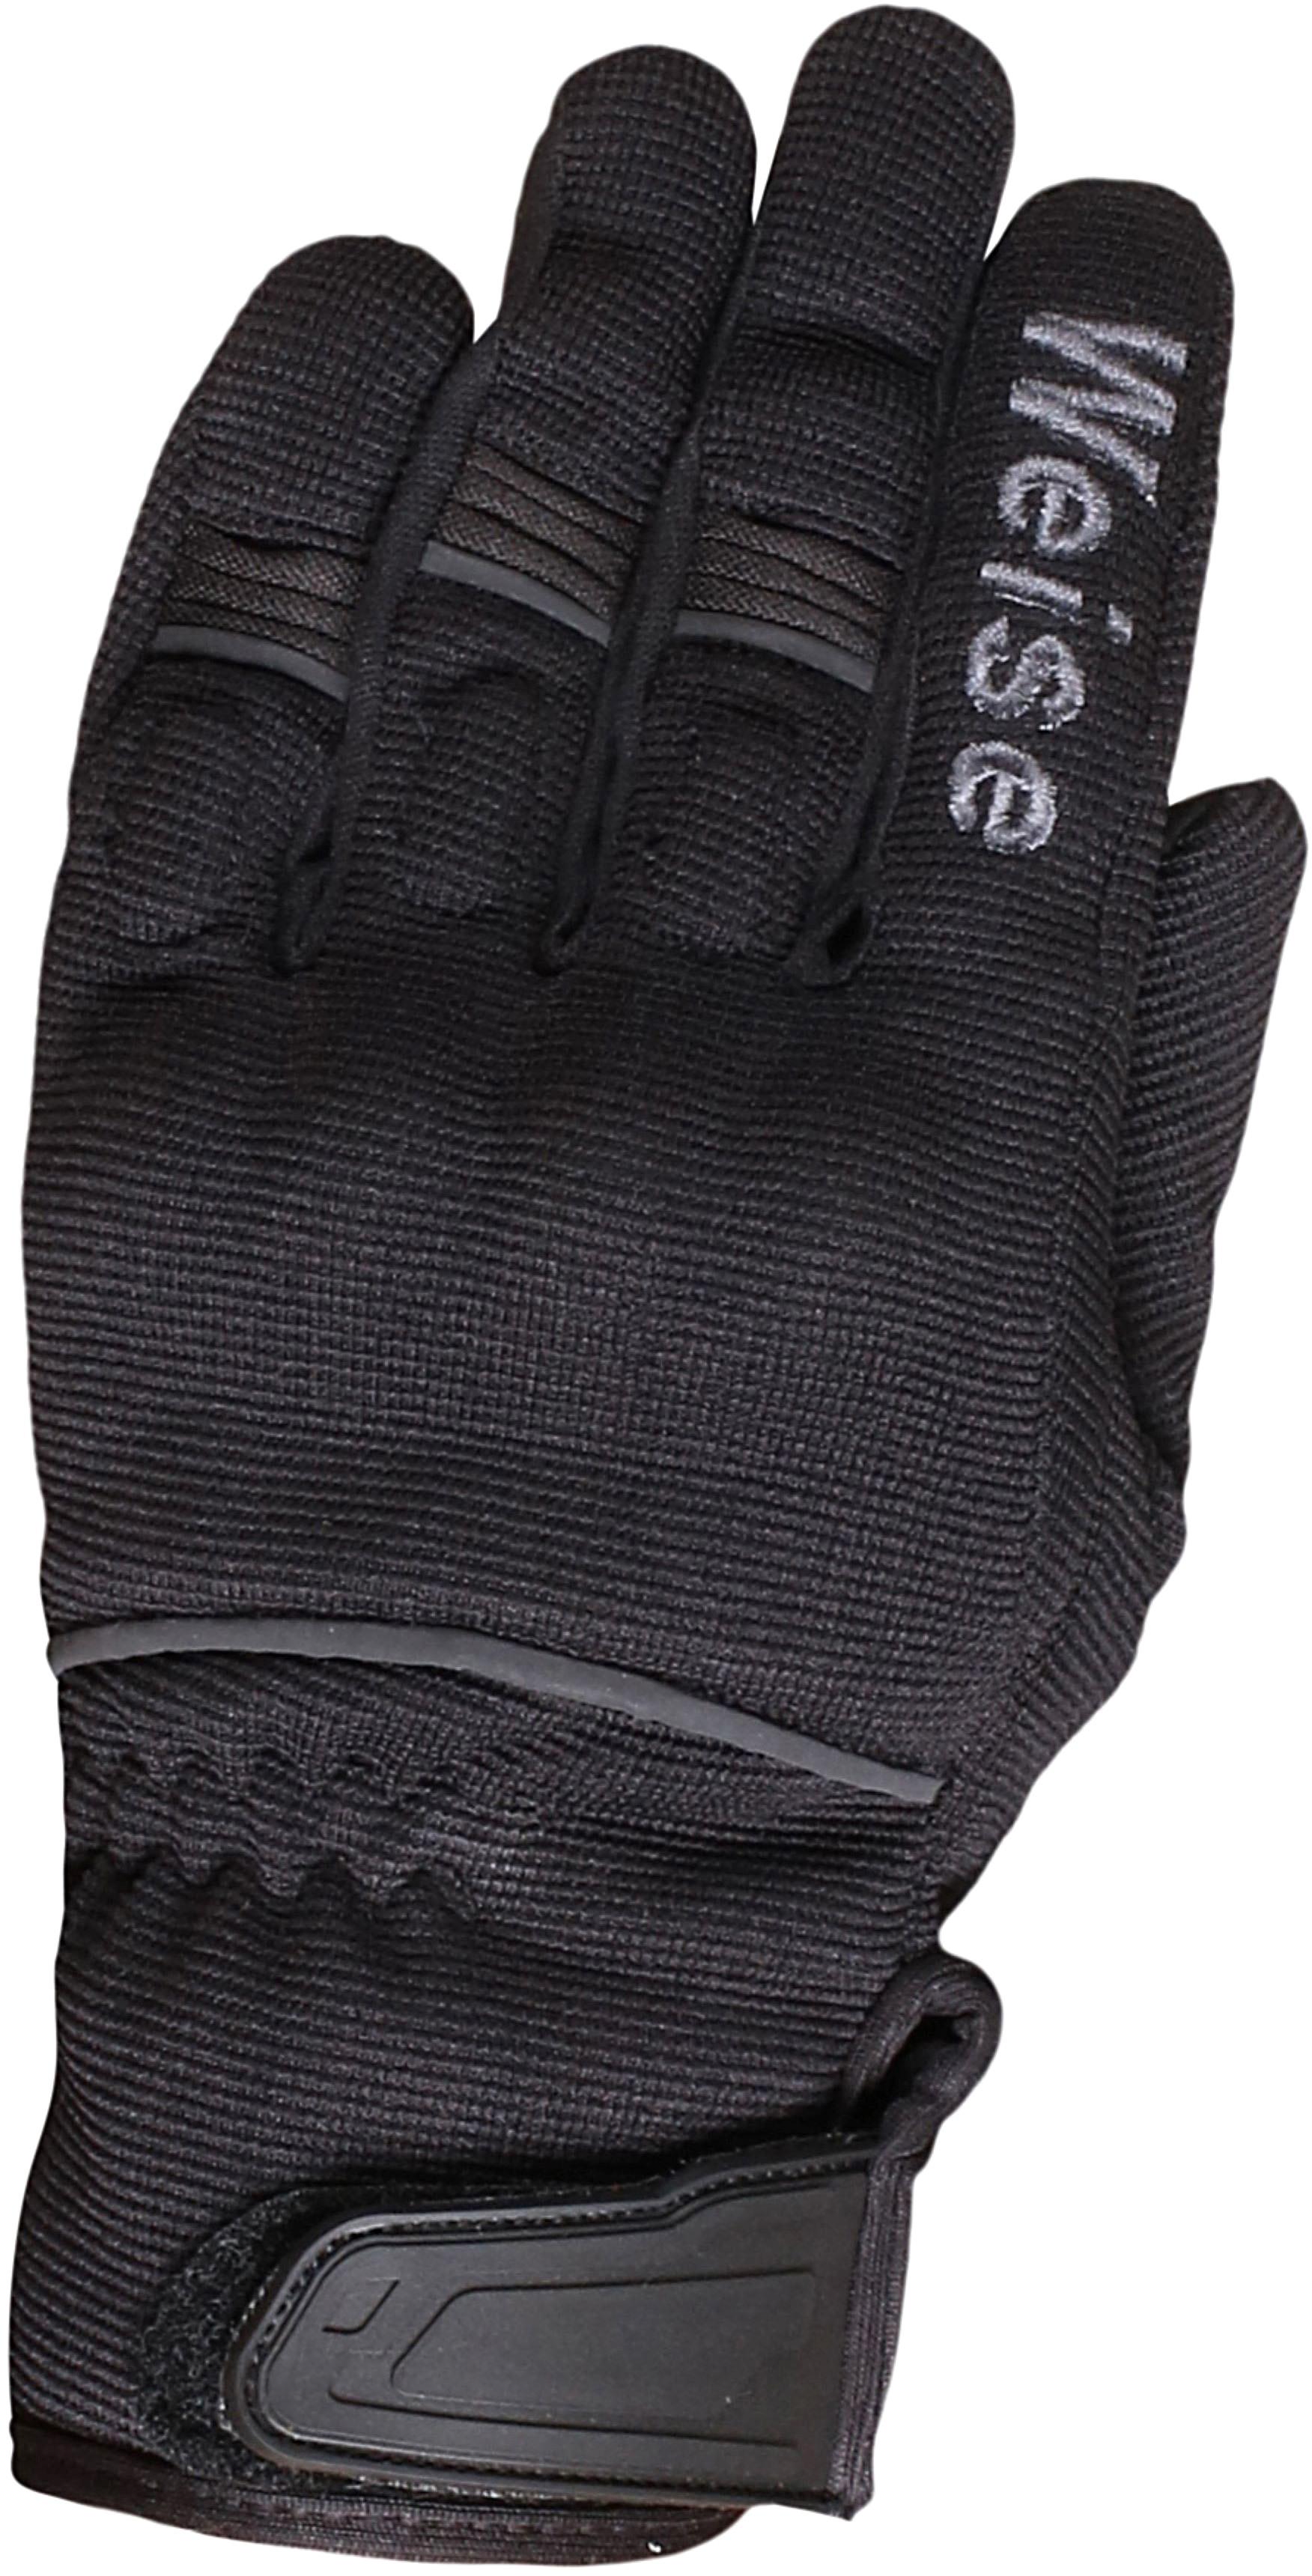 Weise Motorcycle Pit Gloves - Black/Gunmetal, S